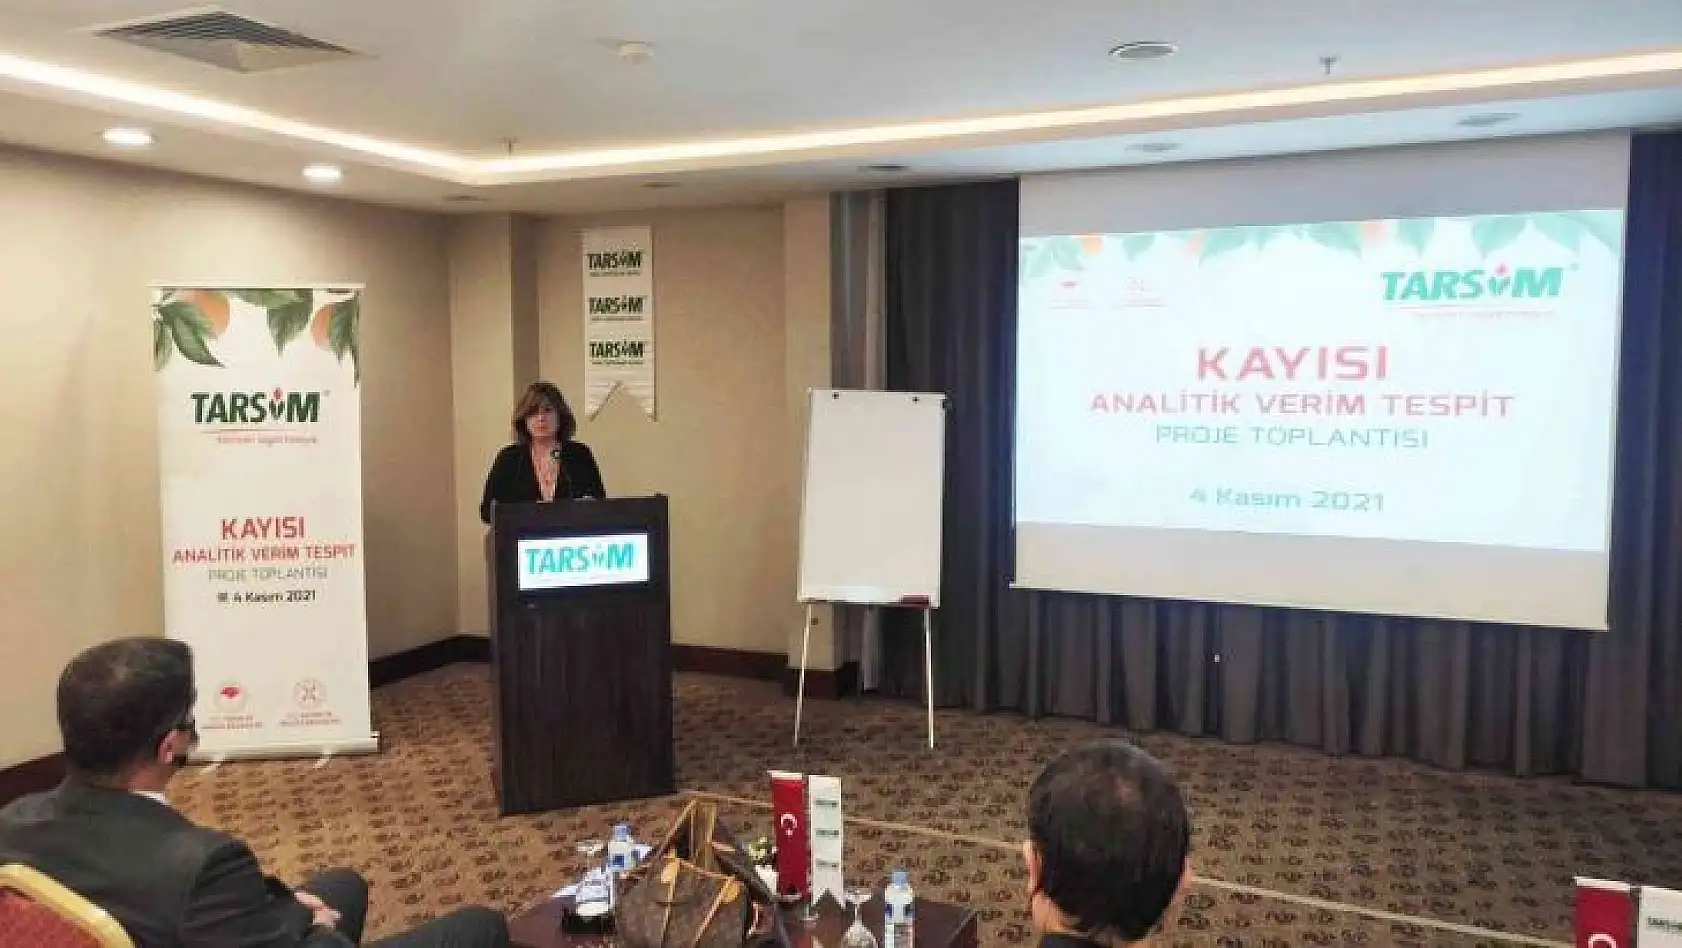 Kayısı Analitik Verim Tespit Proje Toplantısı Malatya'da gerçekleştirildi